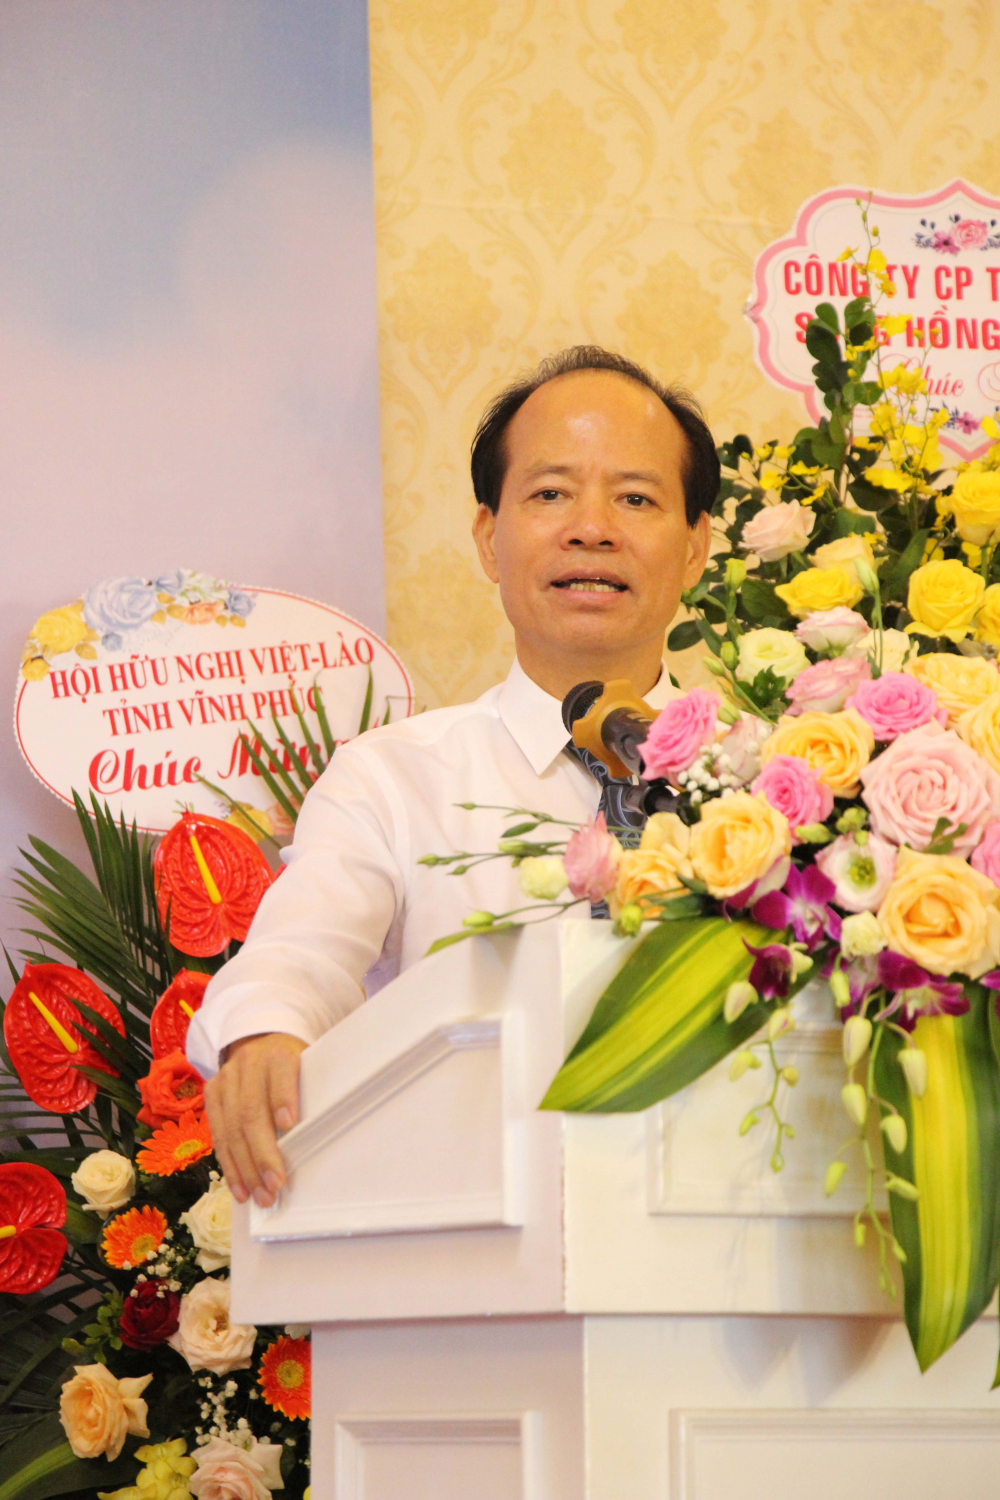 Ông Nguyễn Văn Niên, Chủ tịch HĐQT Tập đoàn Sông Hồng thủ đô, Chủ tịch Hội Hữu nghị Việt-Nga tỉnh Vĩnh Phúc, phát biểu tại cuộc gặp mặt.